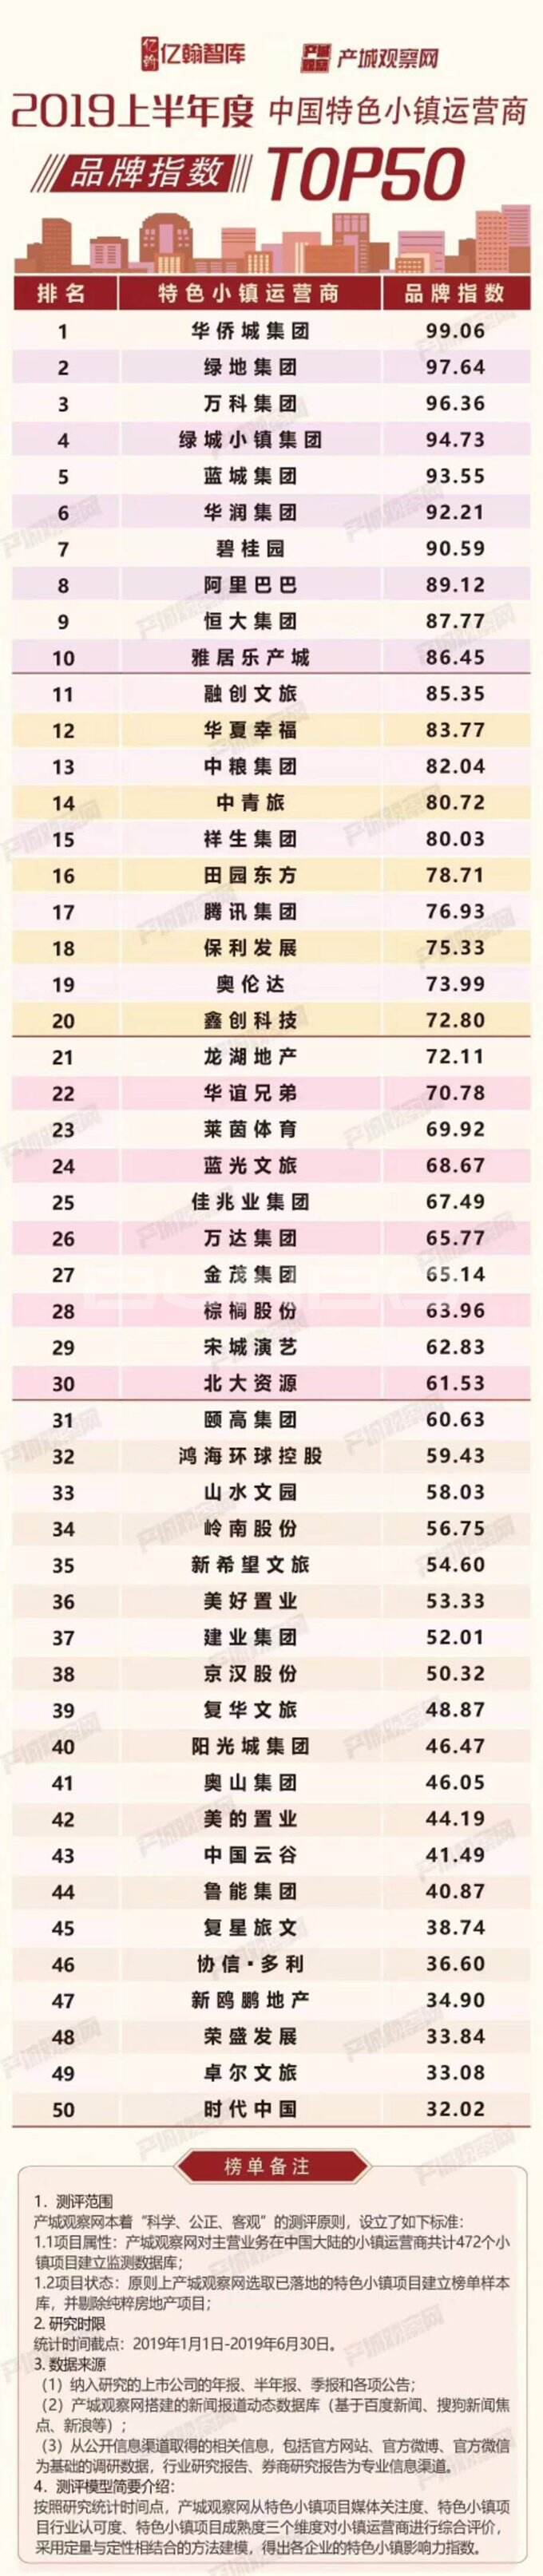 中国特色小镇排行榜